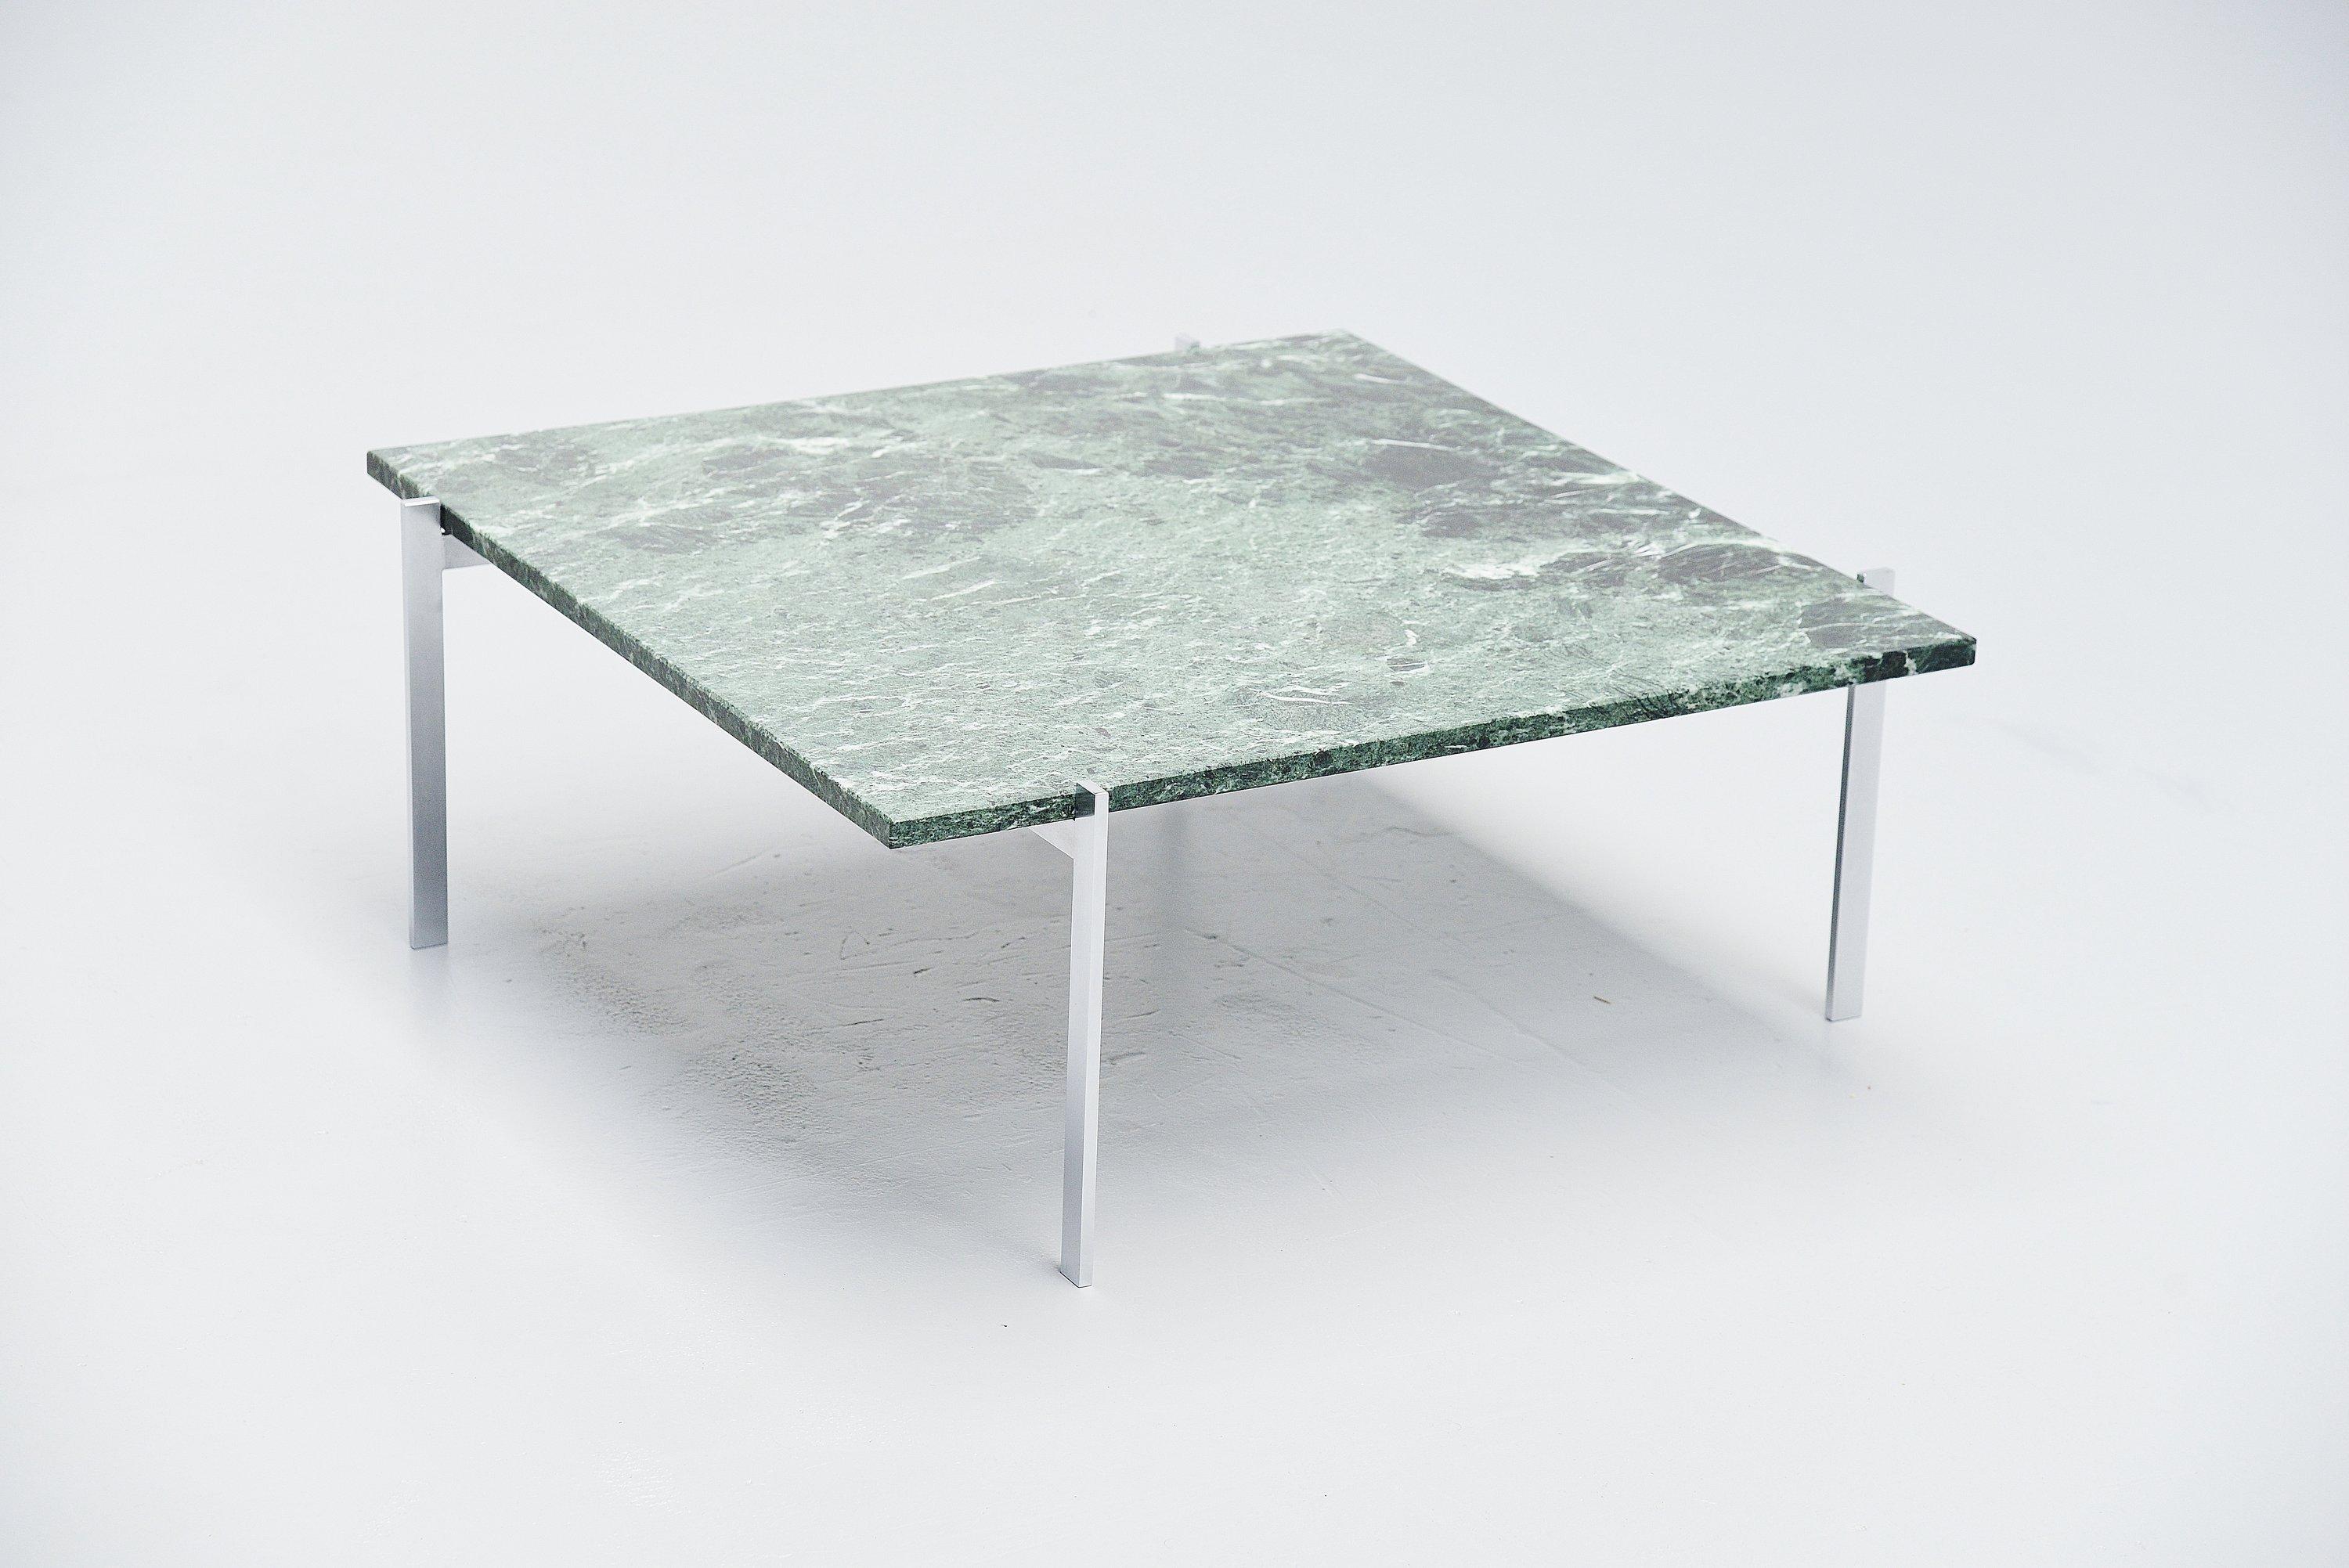 Scandinavian Modern Poul Kjaerholm PK61 Coffee Table Green Marble, Denmark, 1956